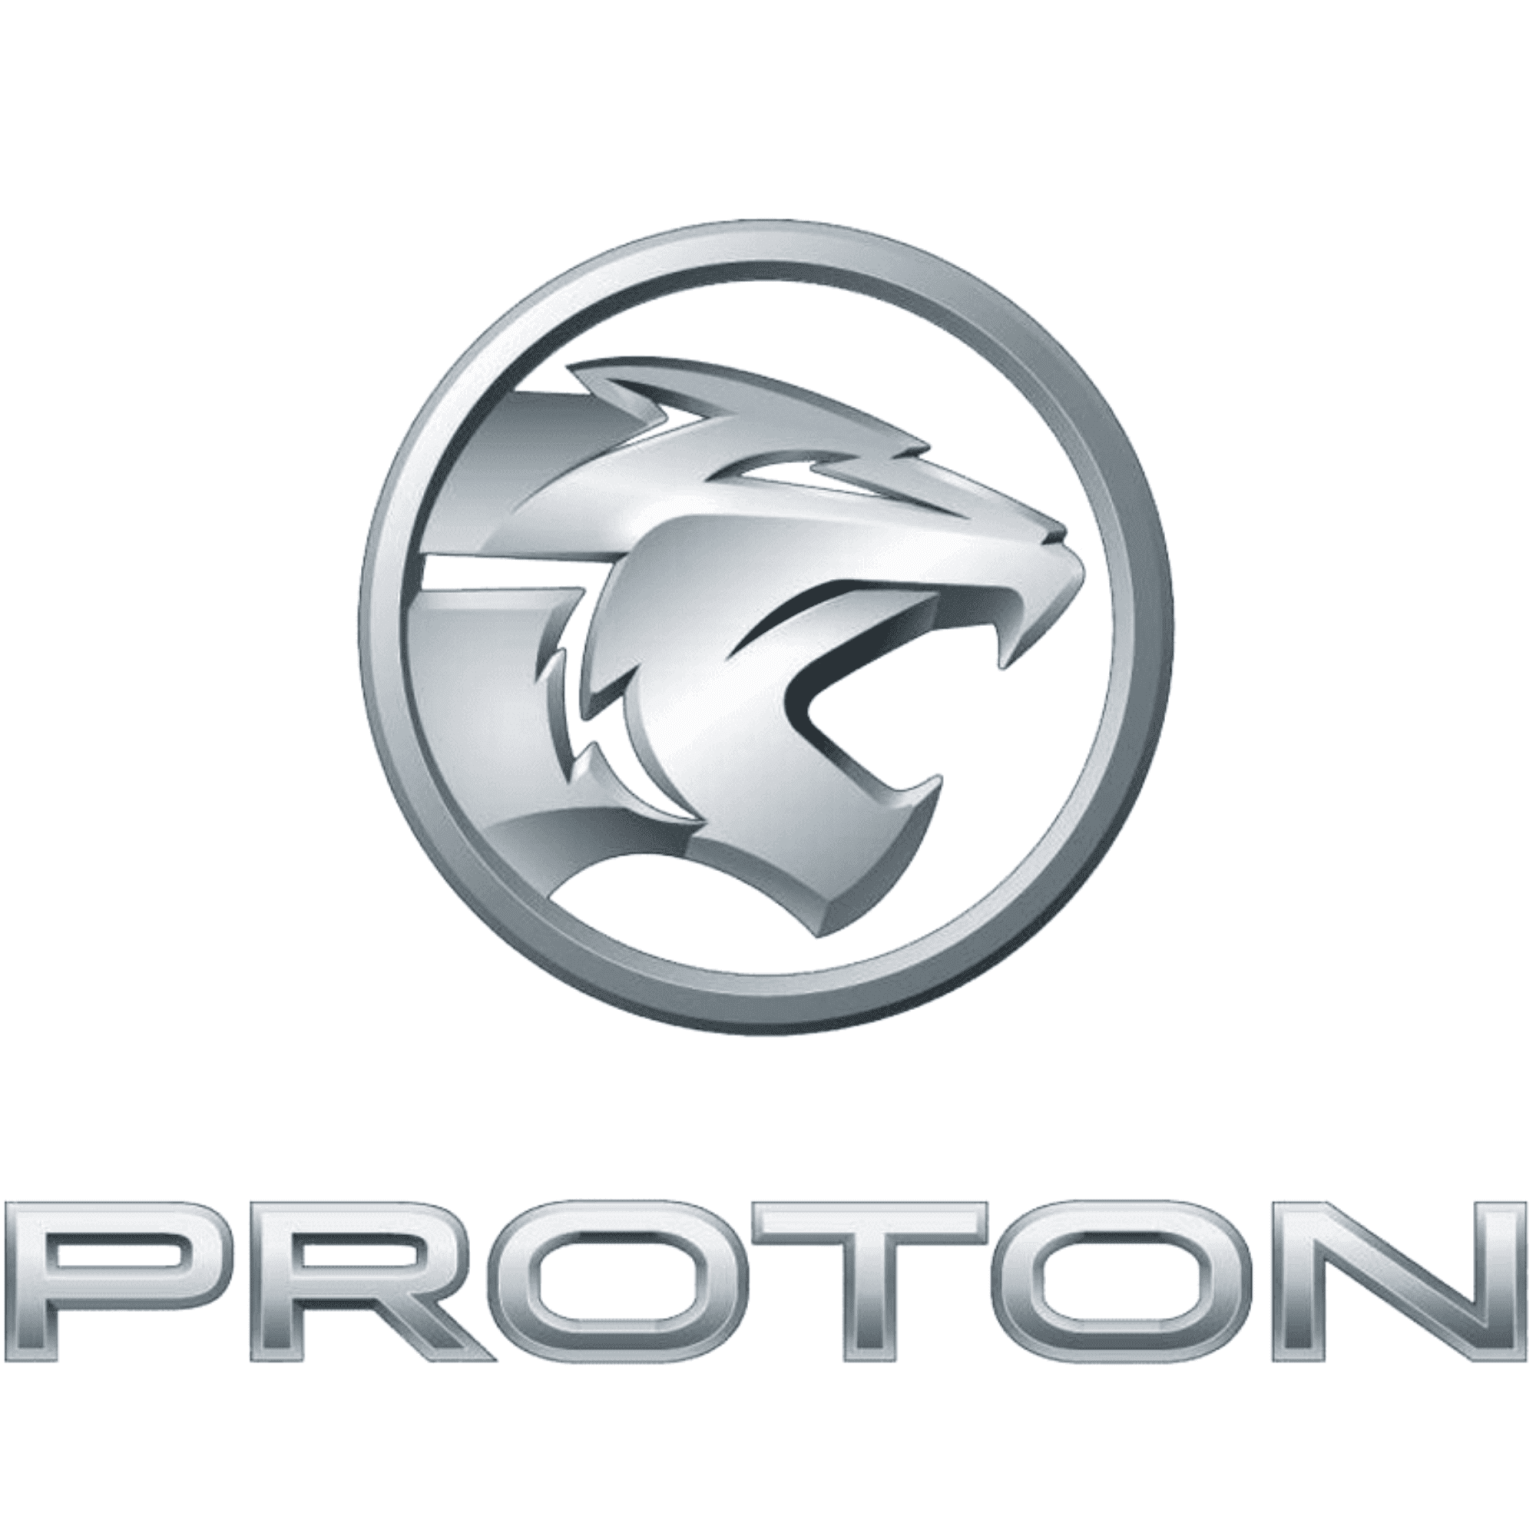 air conditioning repair partner - Proton